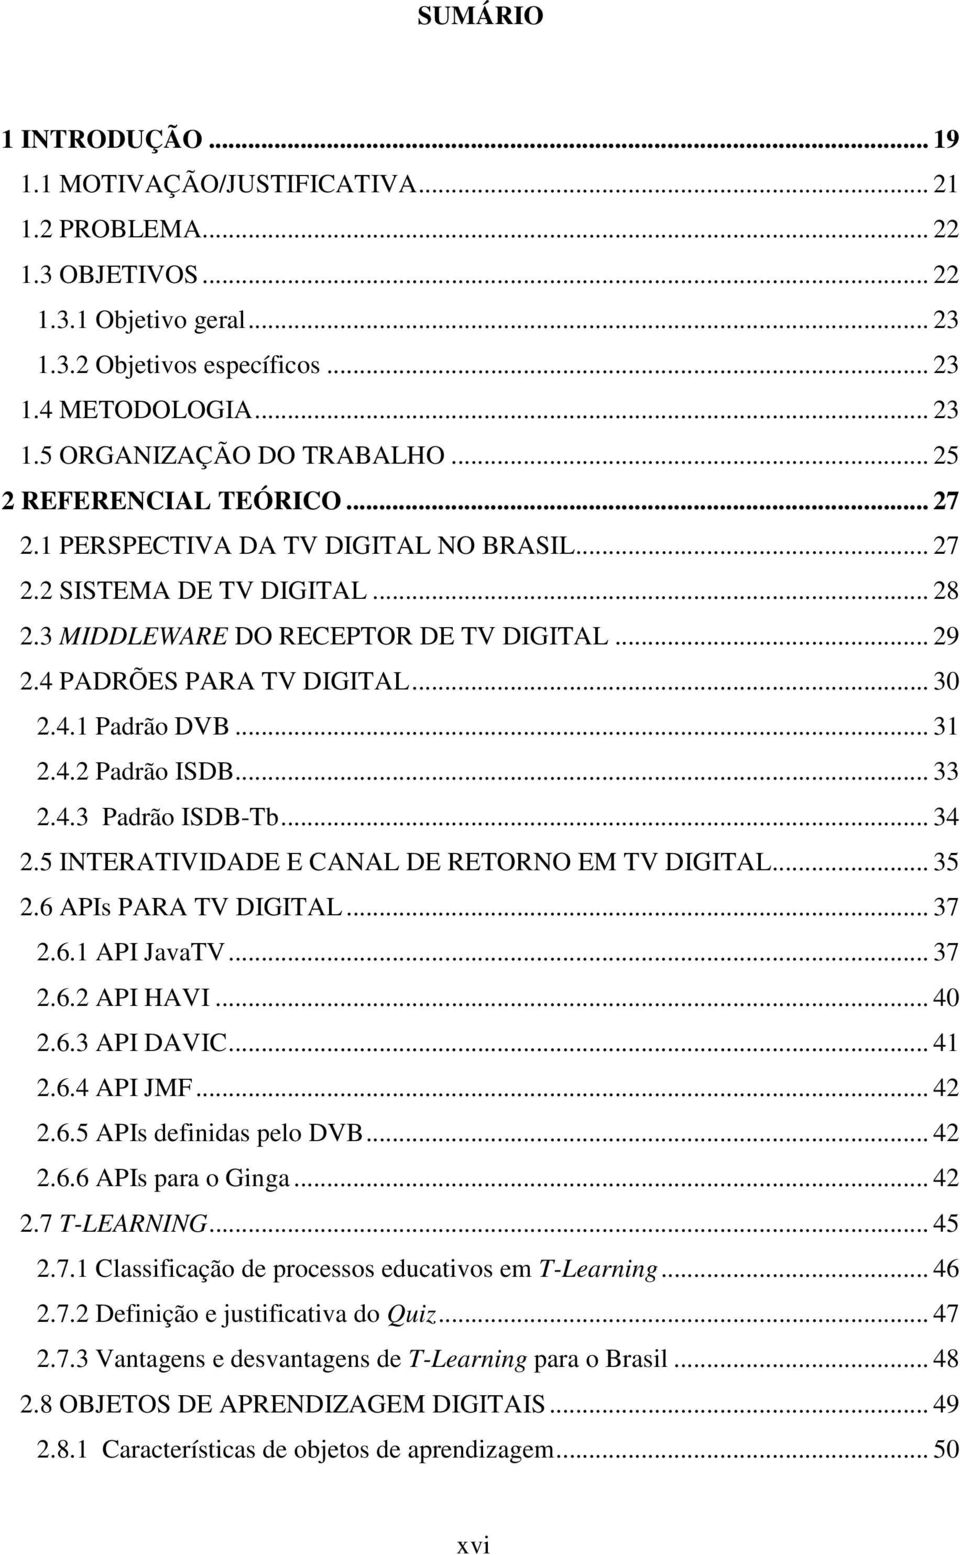 .. 31 2.4.2 Padrão ISDB... 33 2.4.3 Padrão ISDB-Tb... 34 2.5 INTERATIVIDADE E CANAL DE RETORNO EM TV DIGITAL... 35 2.6 APIs PARA TV DIGITAL... 37 2.6.1 API JavaTV... 37 2.6.2 API HAVI... 40 2.6.3 API DAVIC.